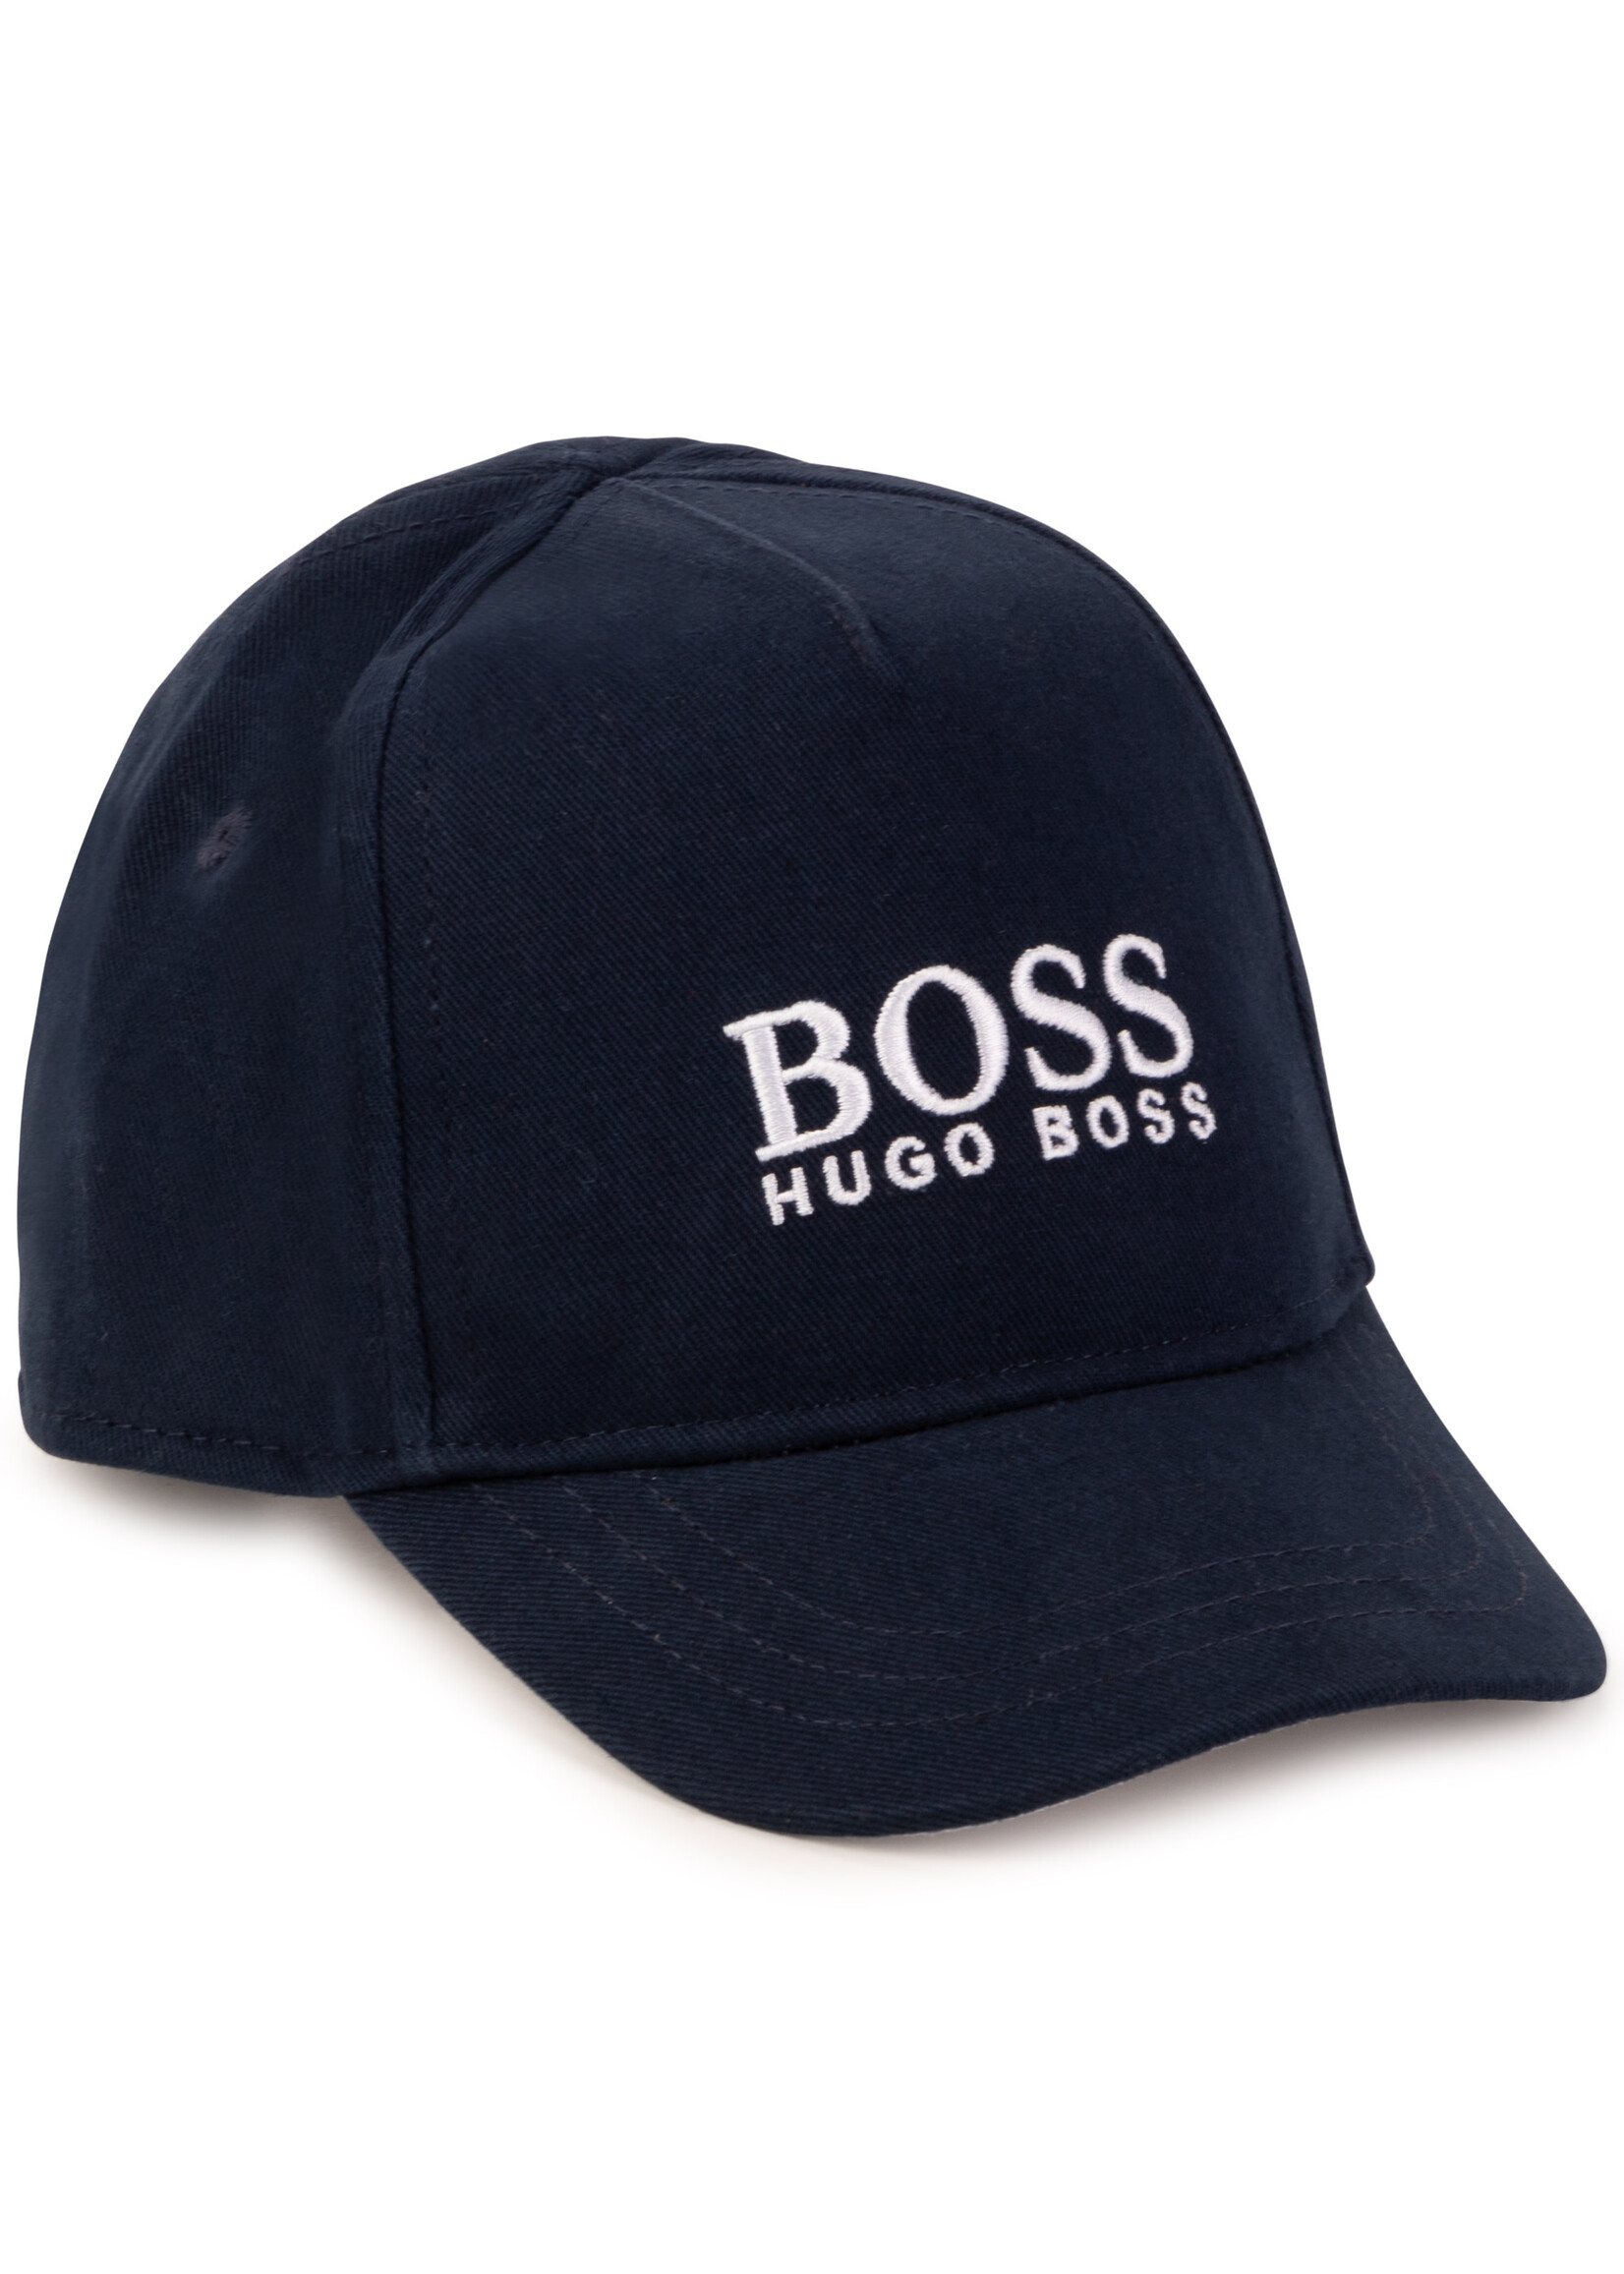 BOSS BOSS Boy cap navy blue - J01129